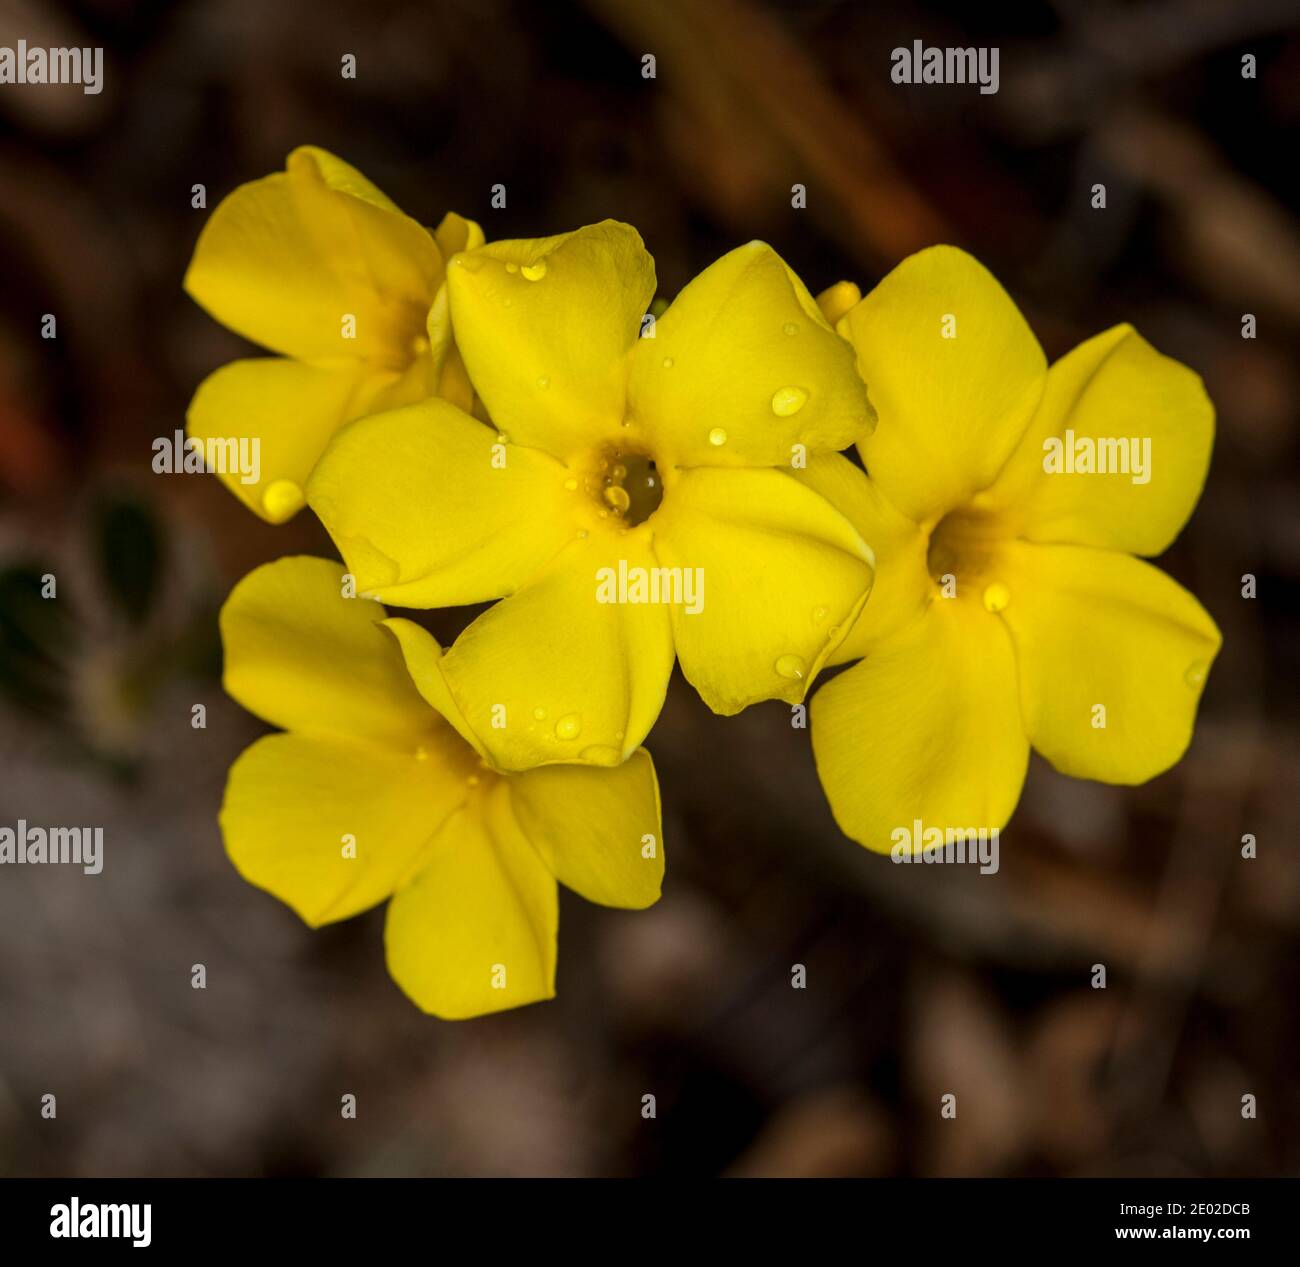 Racimo de flores amarillas vivas de Pachypodium densiflorum, una planta suculenta tolerante a la sequía, sobre un fondo marrón oscuro Foto de stock